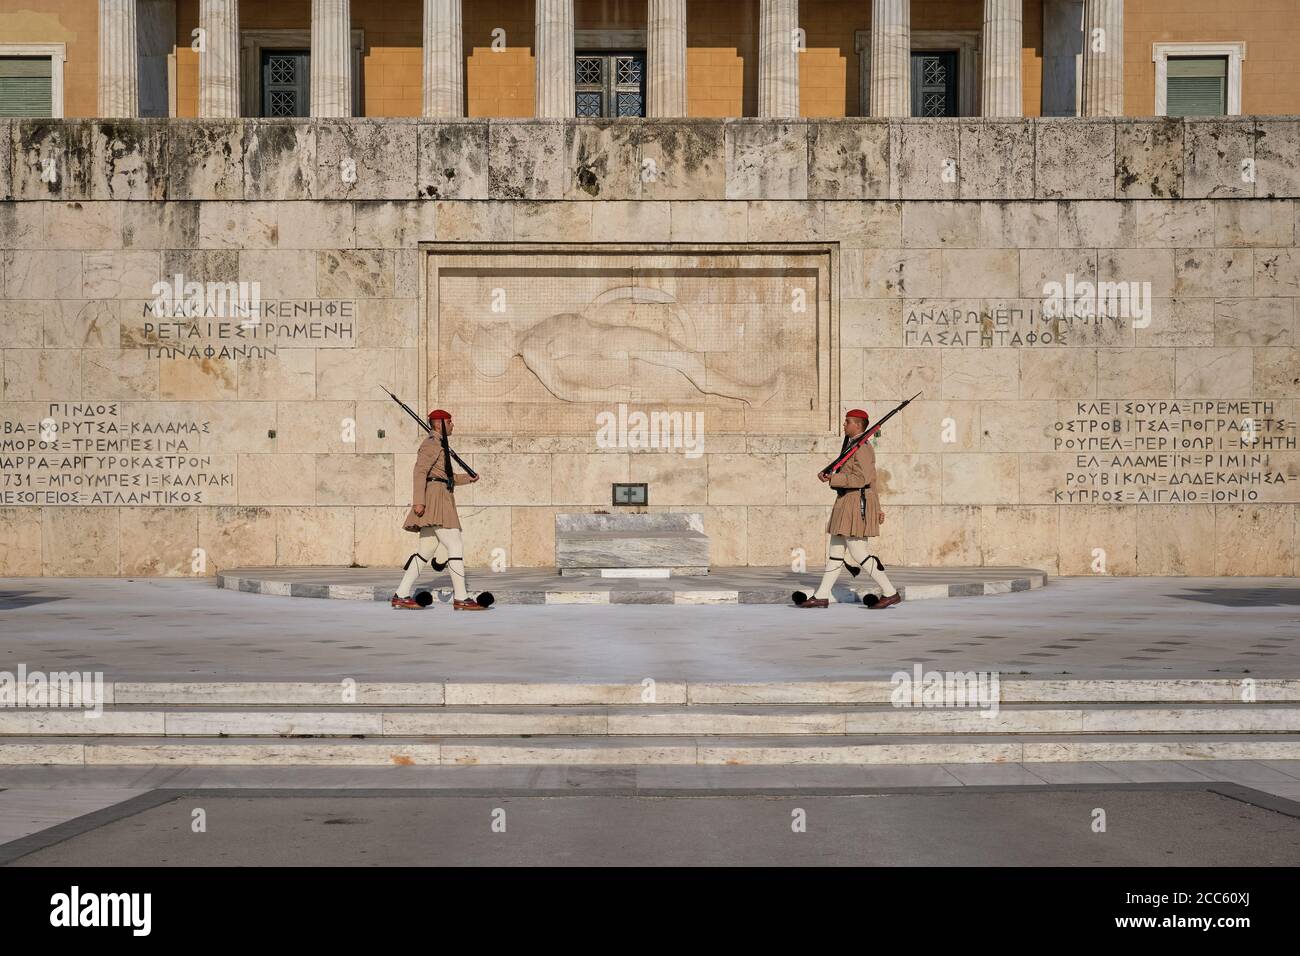 Athen, Griechenland - 14. Mai 2019: Wechsel der Präsidentengarde Evzones durch das griechische Grab des unbekannten Soldaten. Berühmte tägliche Zeremonie, patriotisch, stolz. Stockfoto